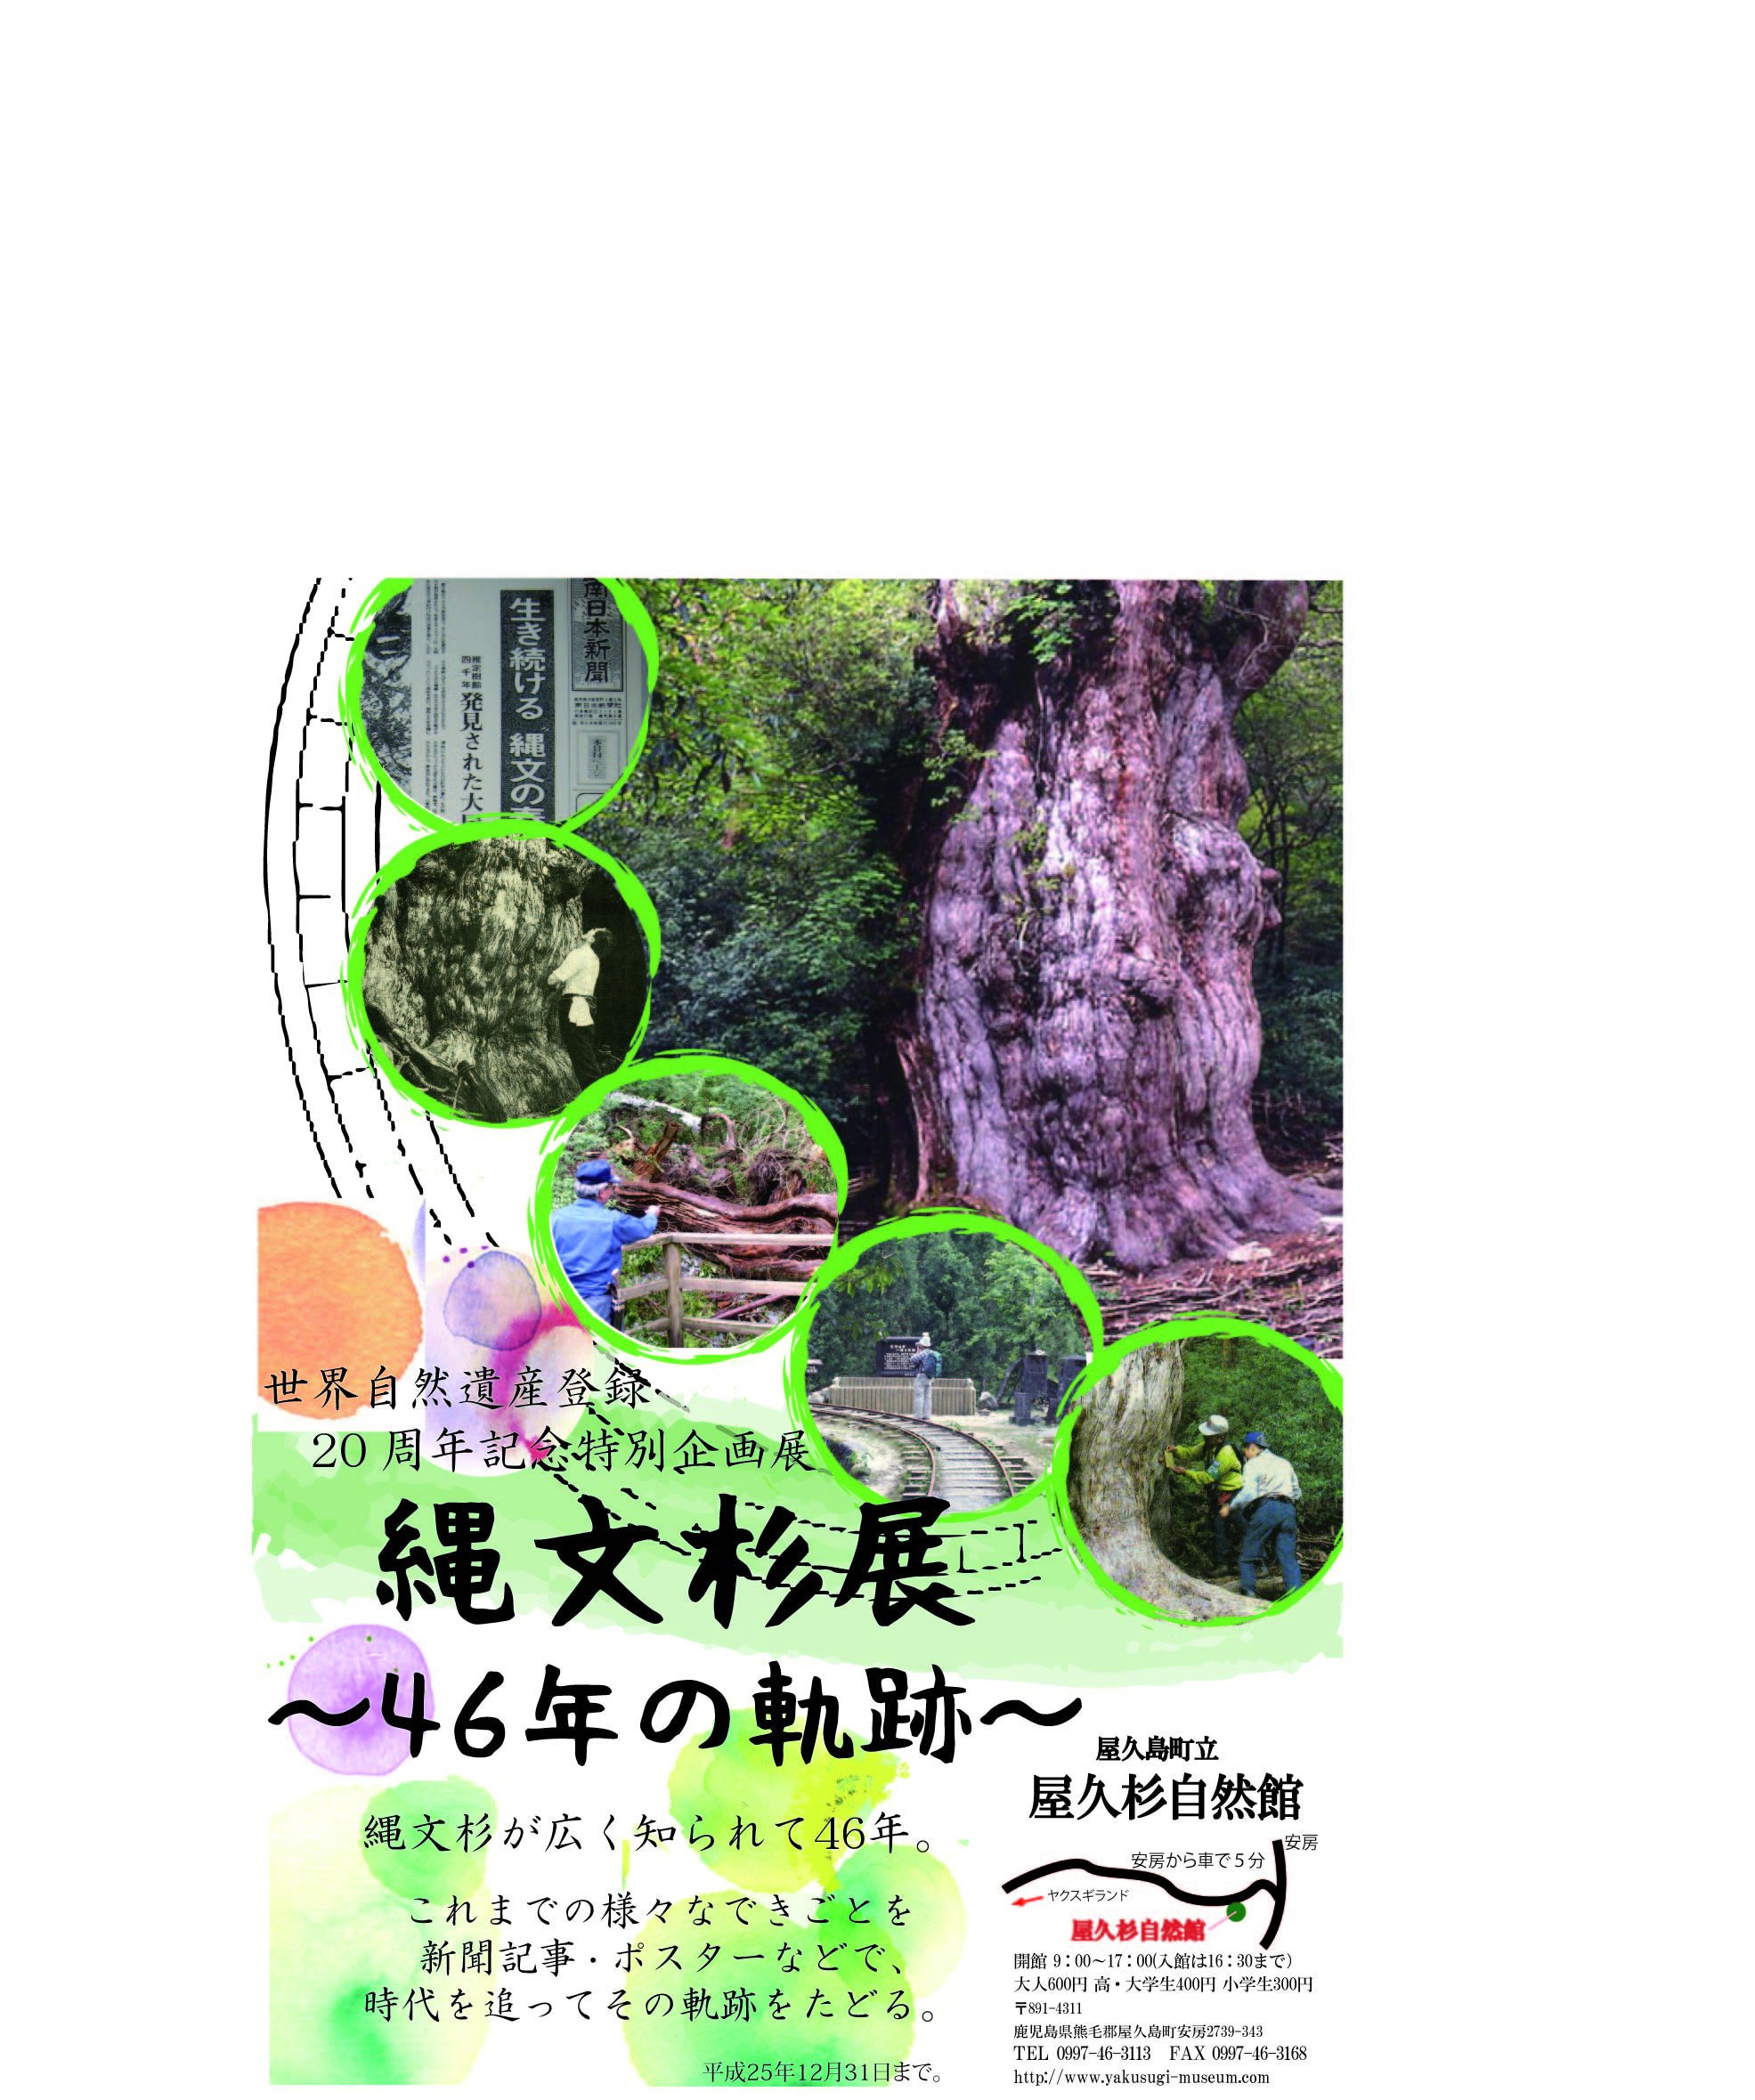 貴重 杉の芽 縮刷版 第1巻 昭和42年〜平成元年 屋久島 町制施工30周年